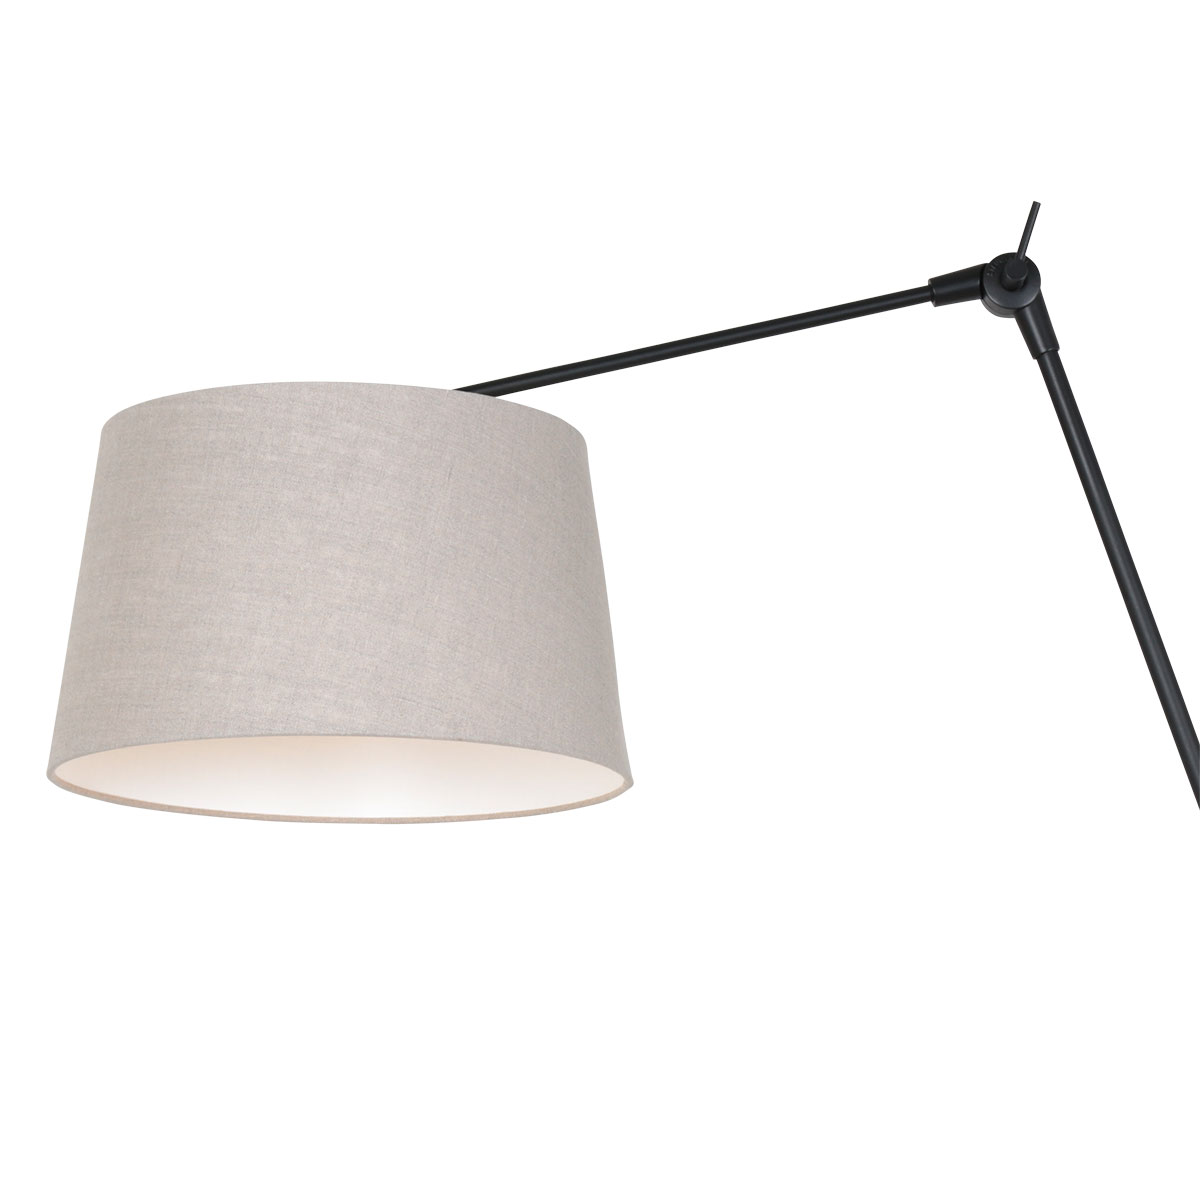 Steinhauer Wandlamp Prestige chic | 1-lichts | kantelbaar | E27 | 30x100 cm | crème/zwart